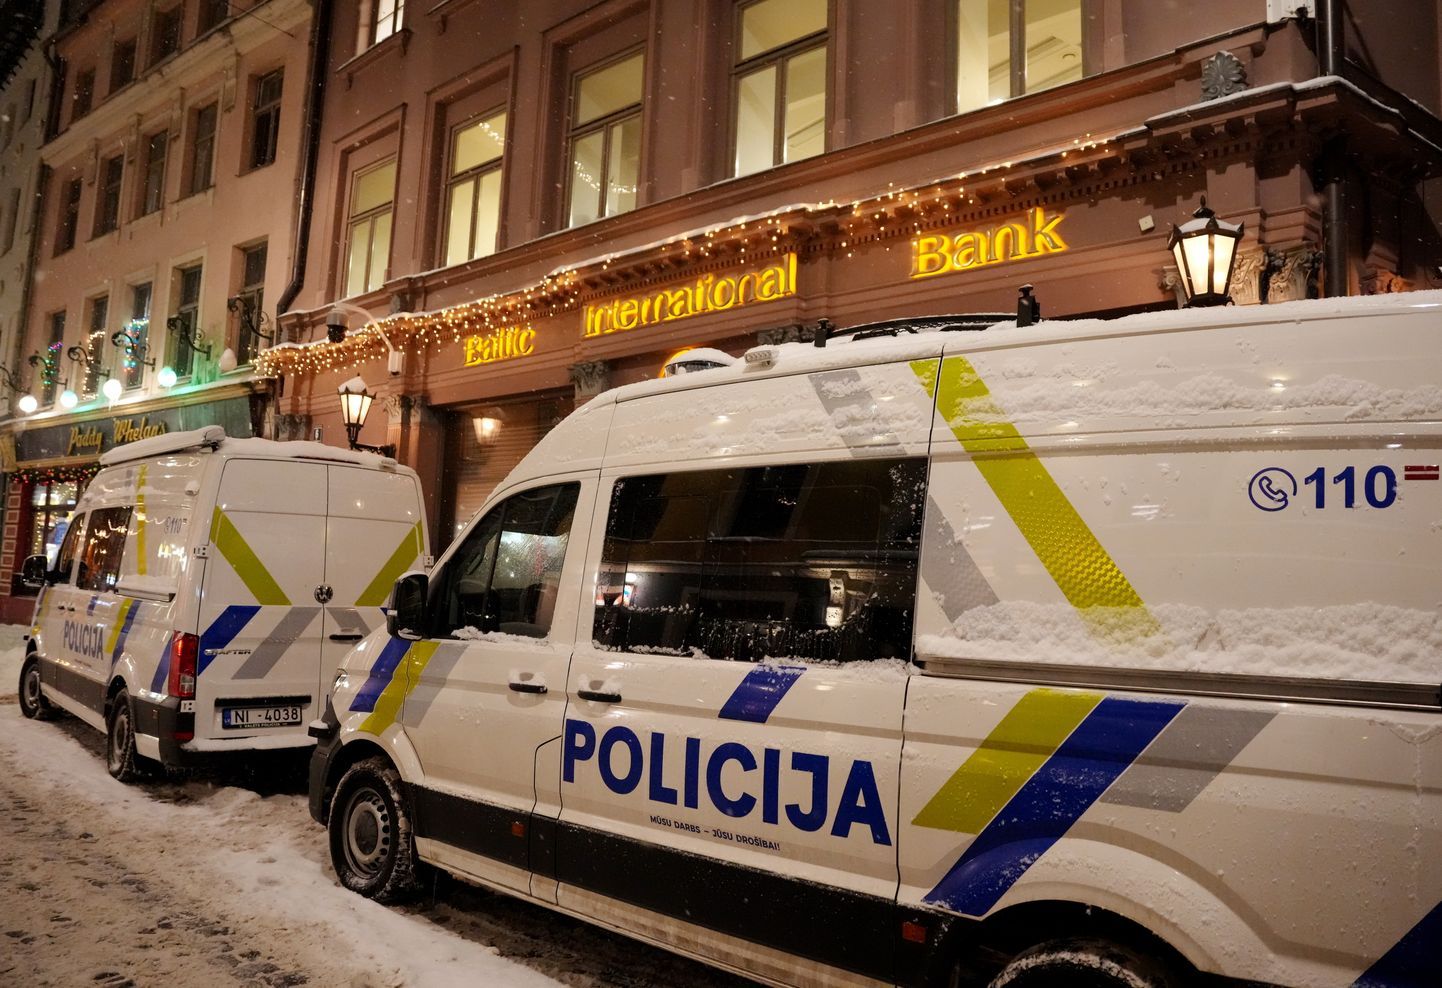 Автомобили полиции Латвии. Иллюстративное фото.